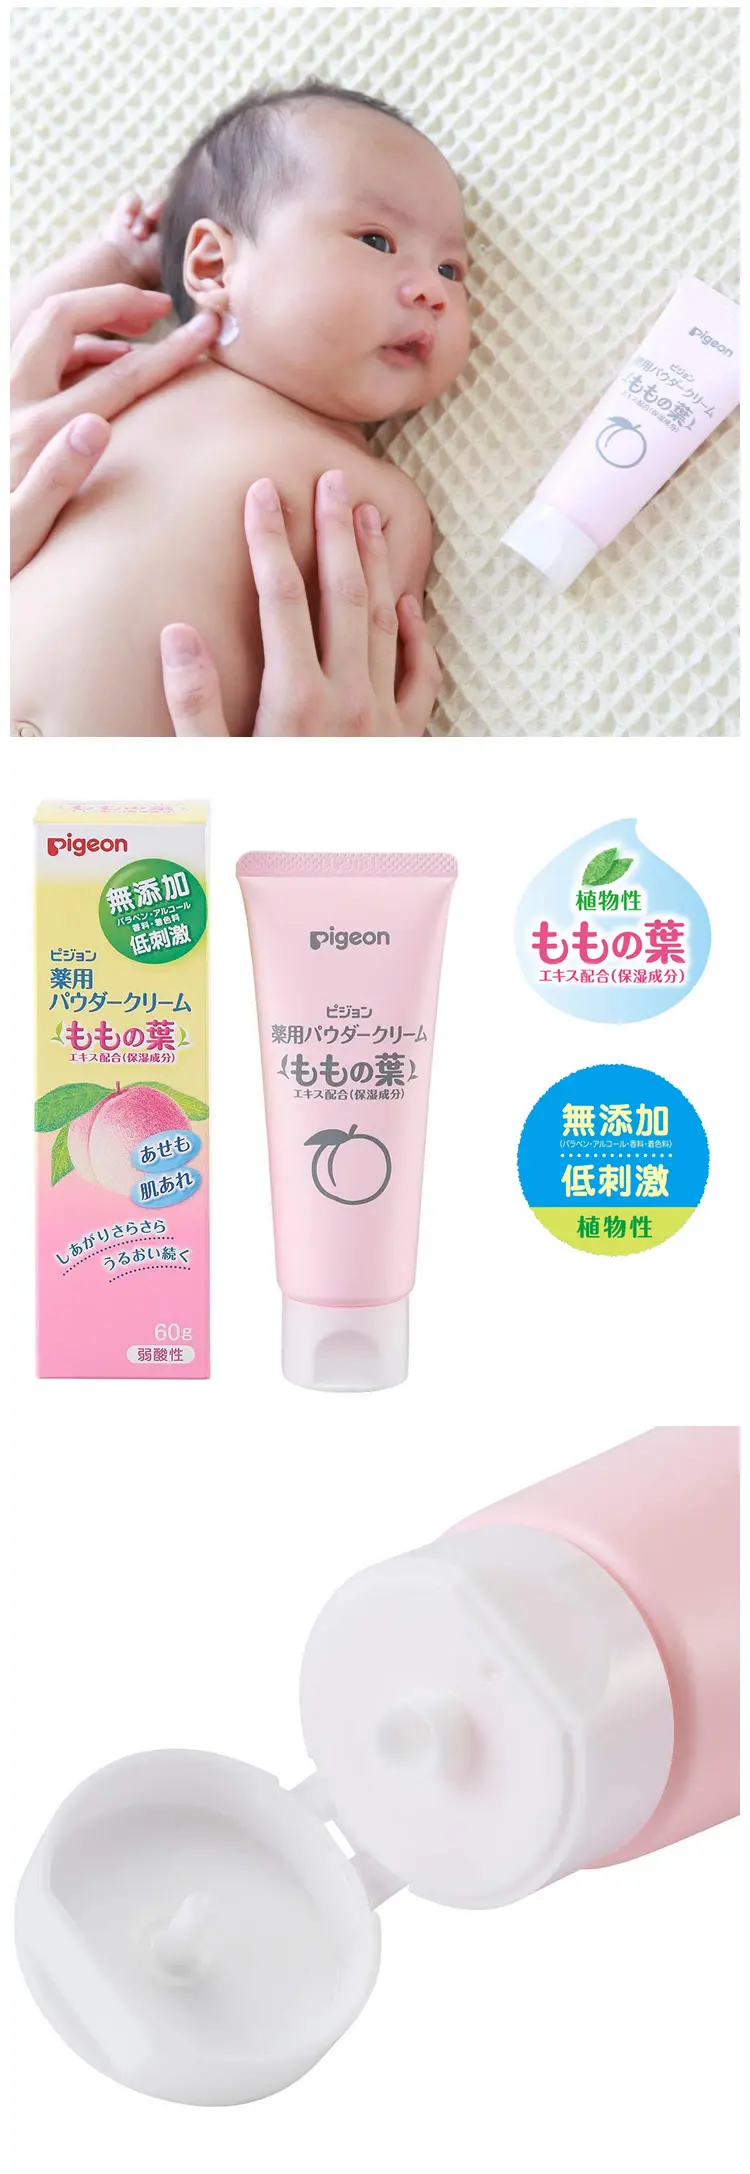 Pigeon 桃子精華藥用保濕乳霜(預防痱子)